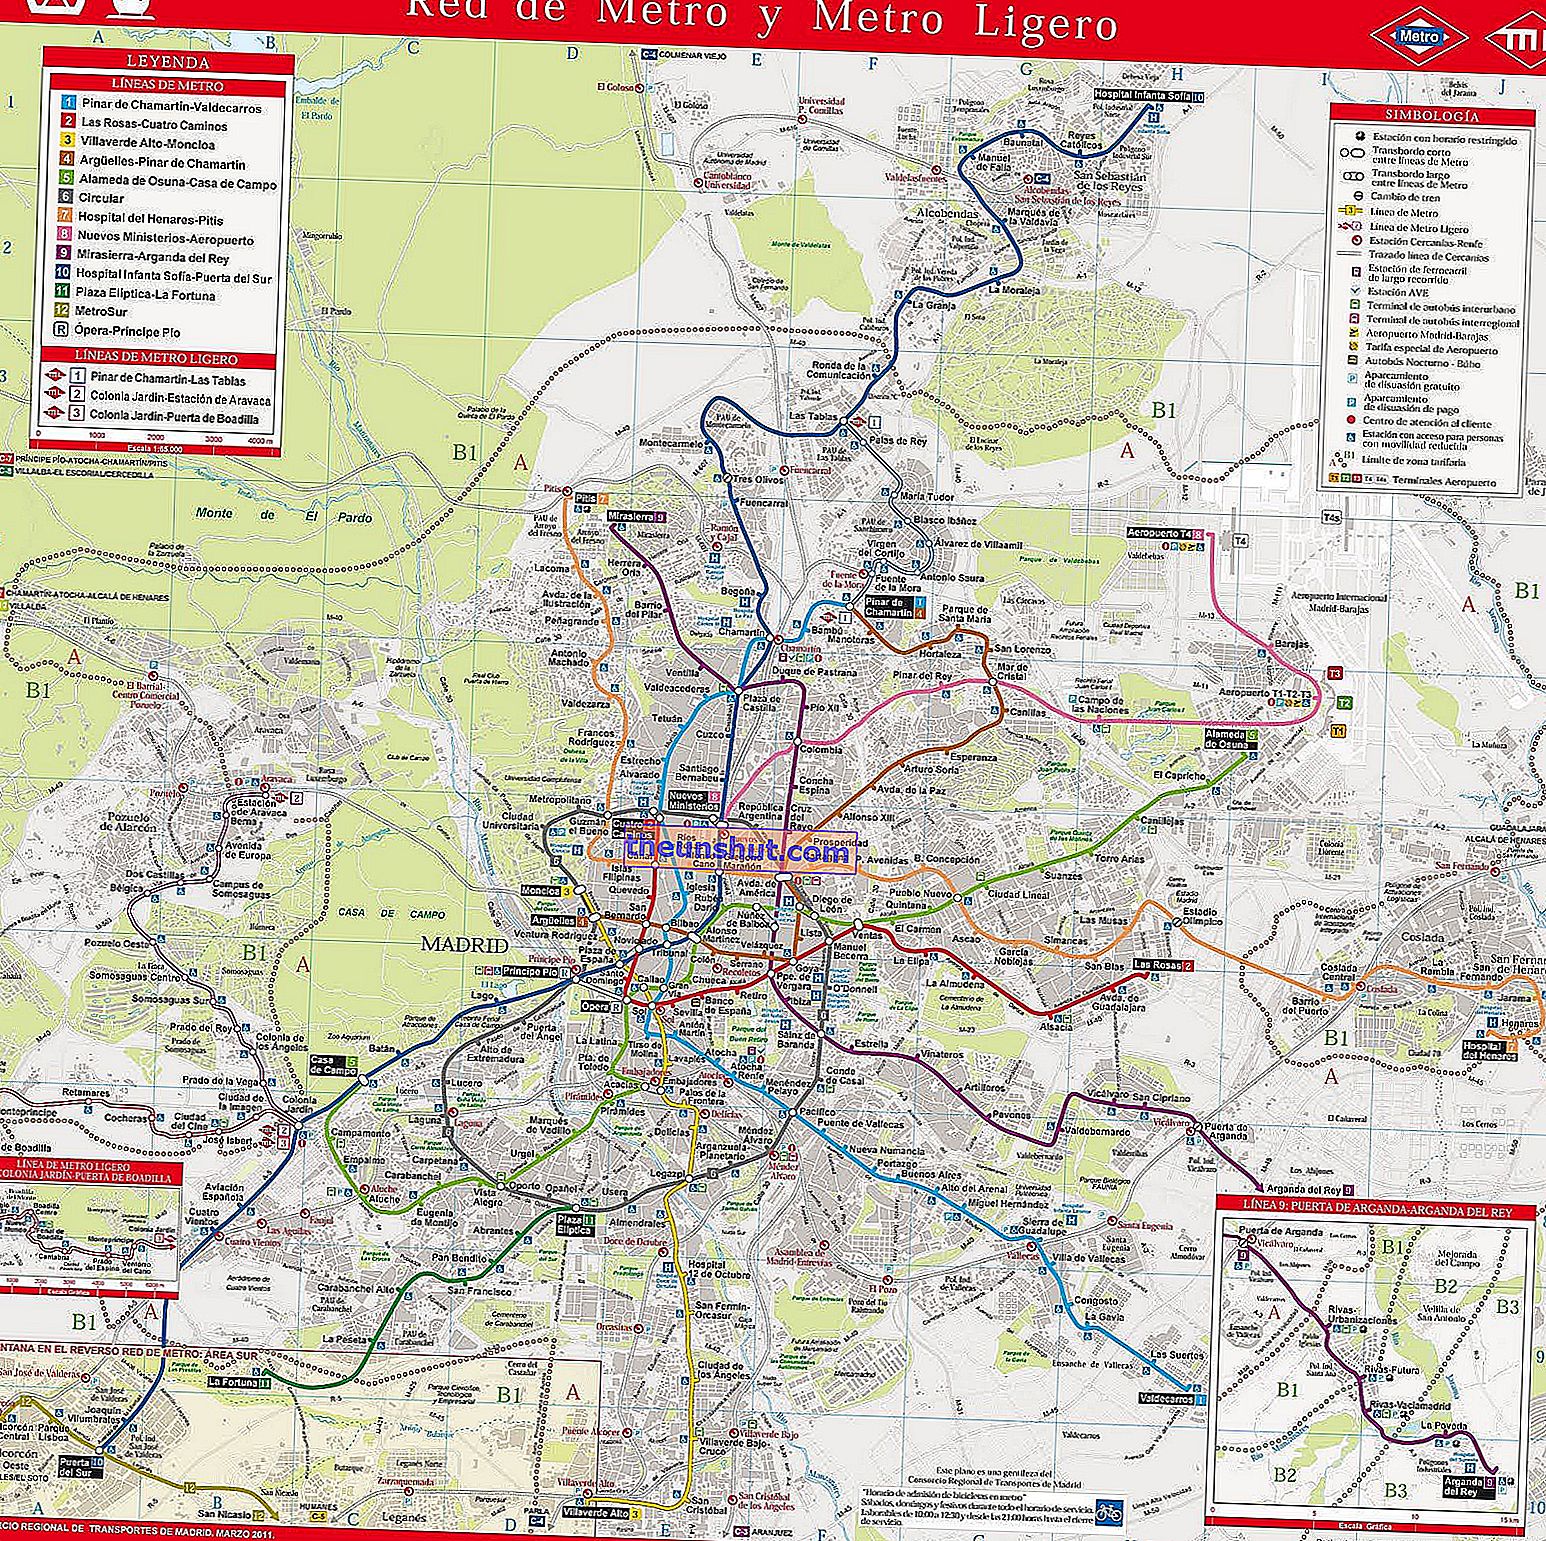 Metro de Madrid, più di 100 immagini della mappa della metropolitana, dei pendolari e degli autobus